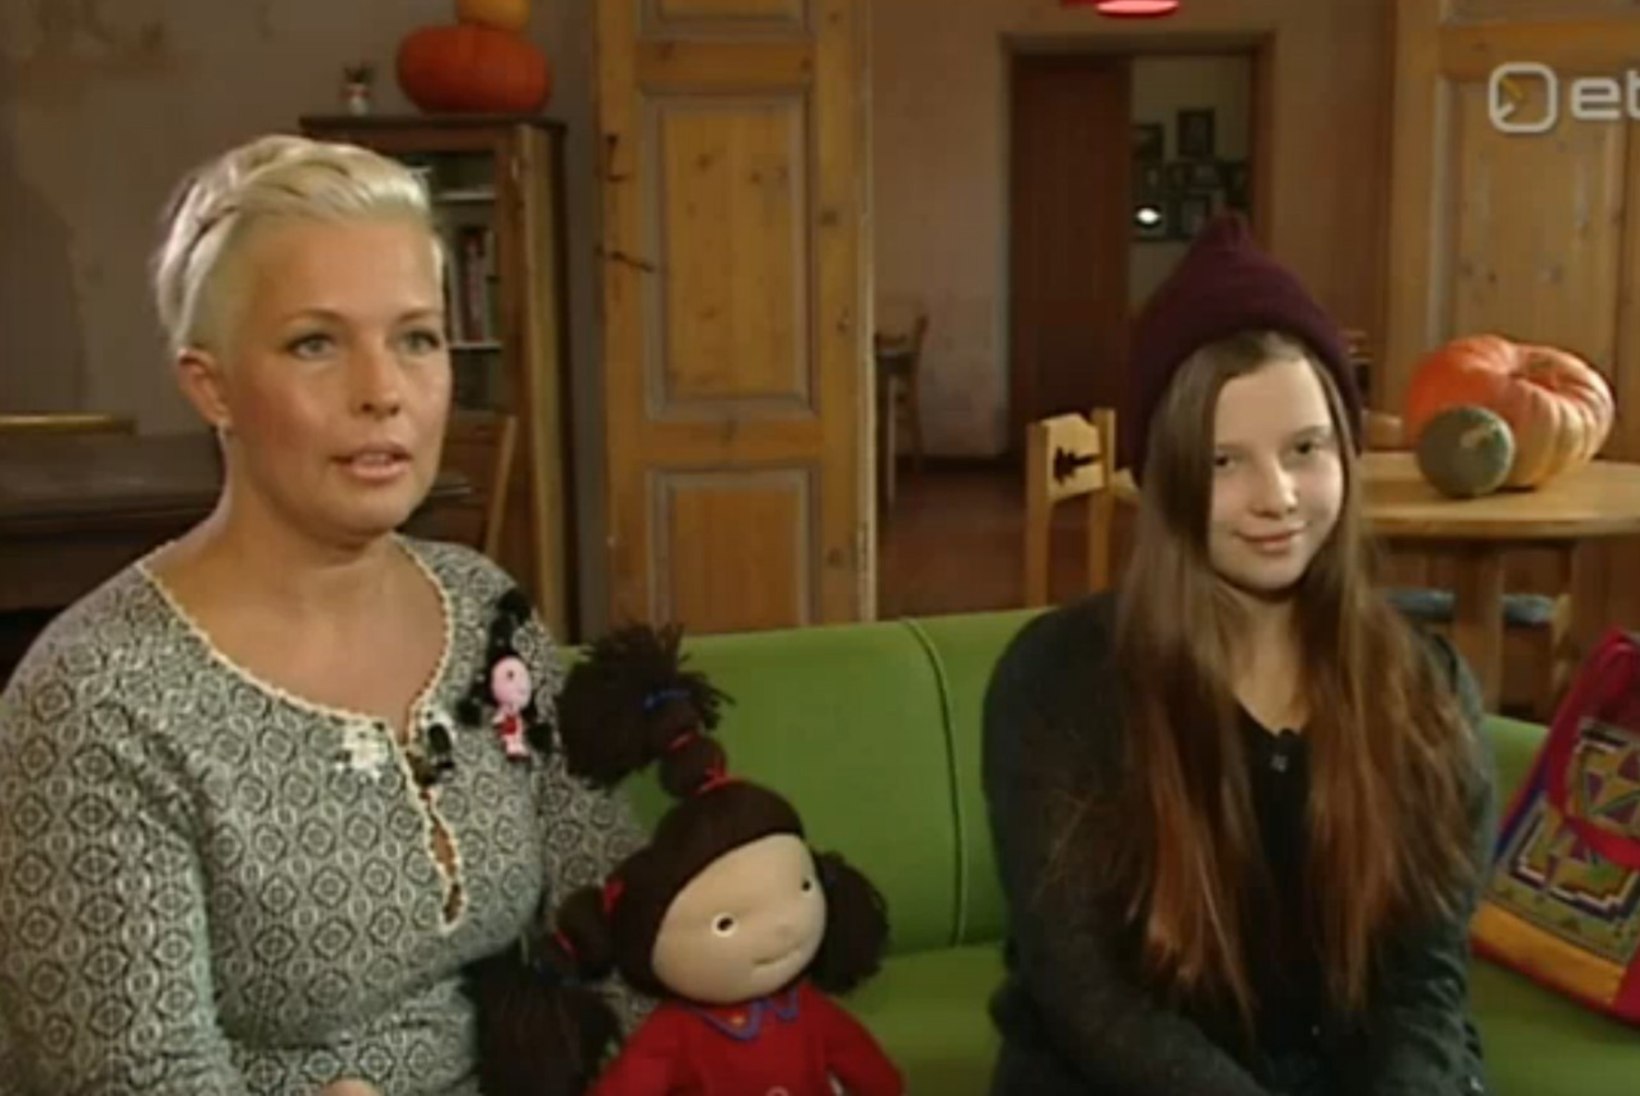 Kadri Keiu Ilves õpetab vennale eesti keelt: "Ma laulsin talle unelaule."